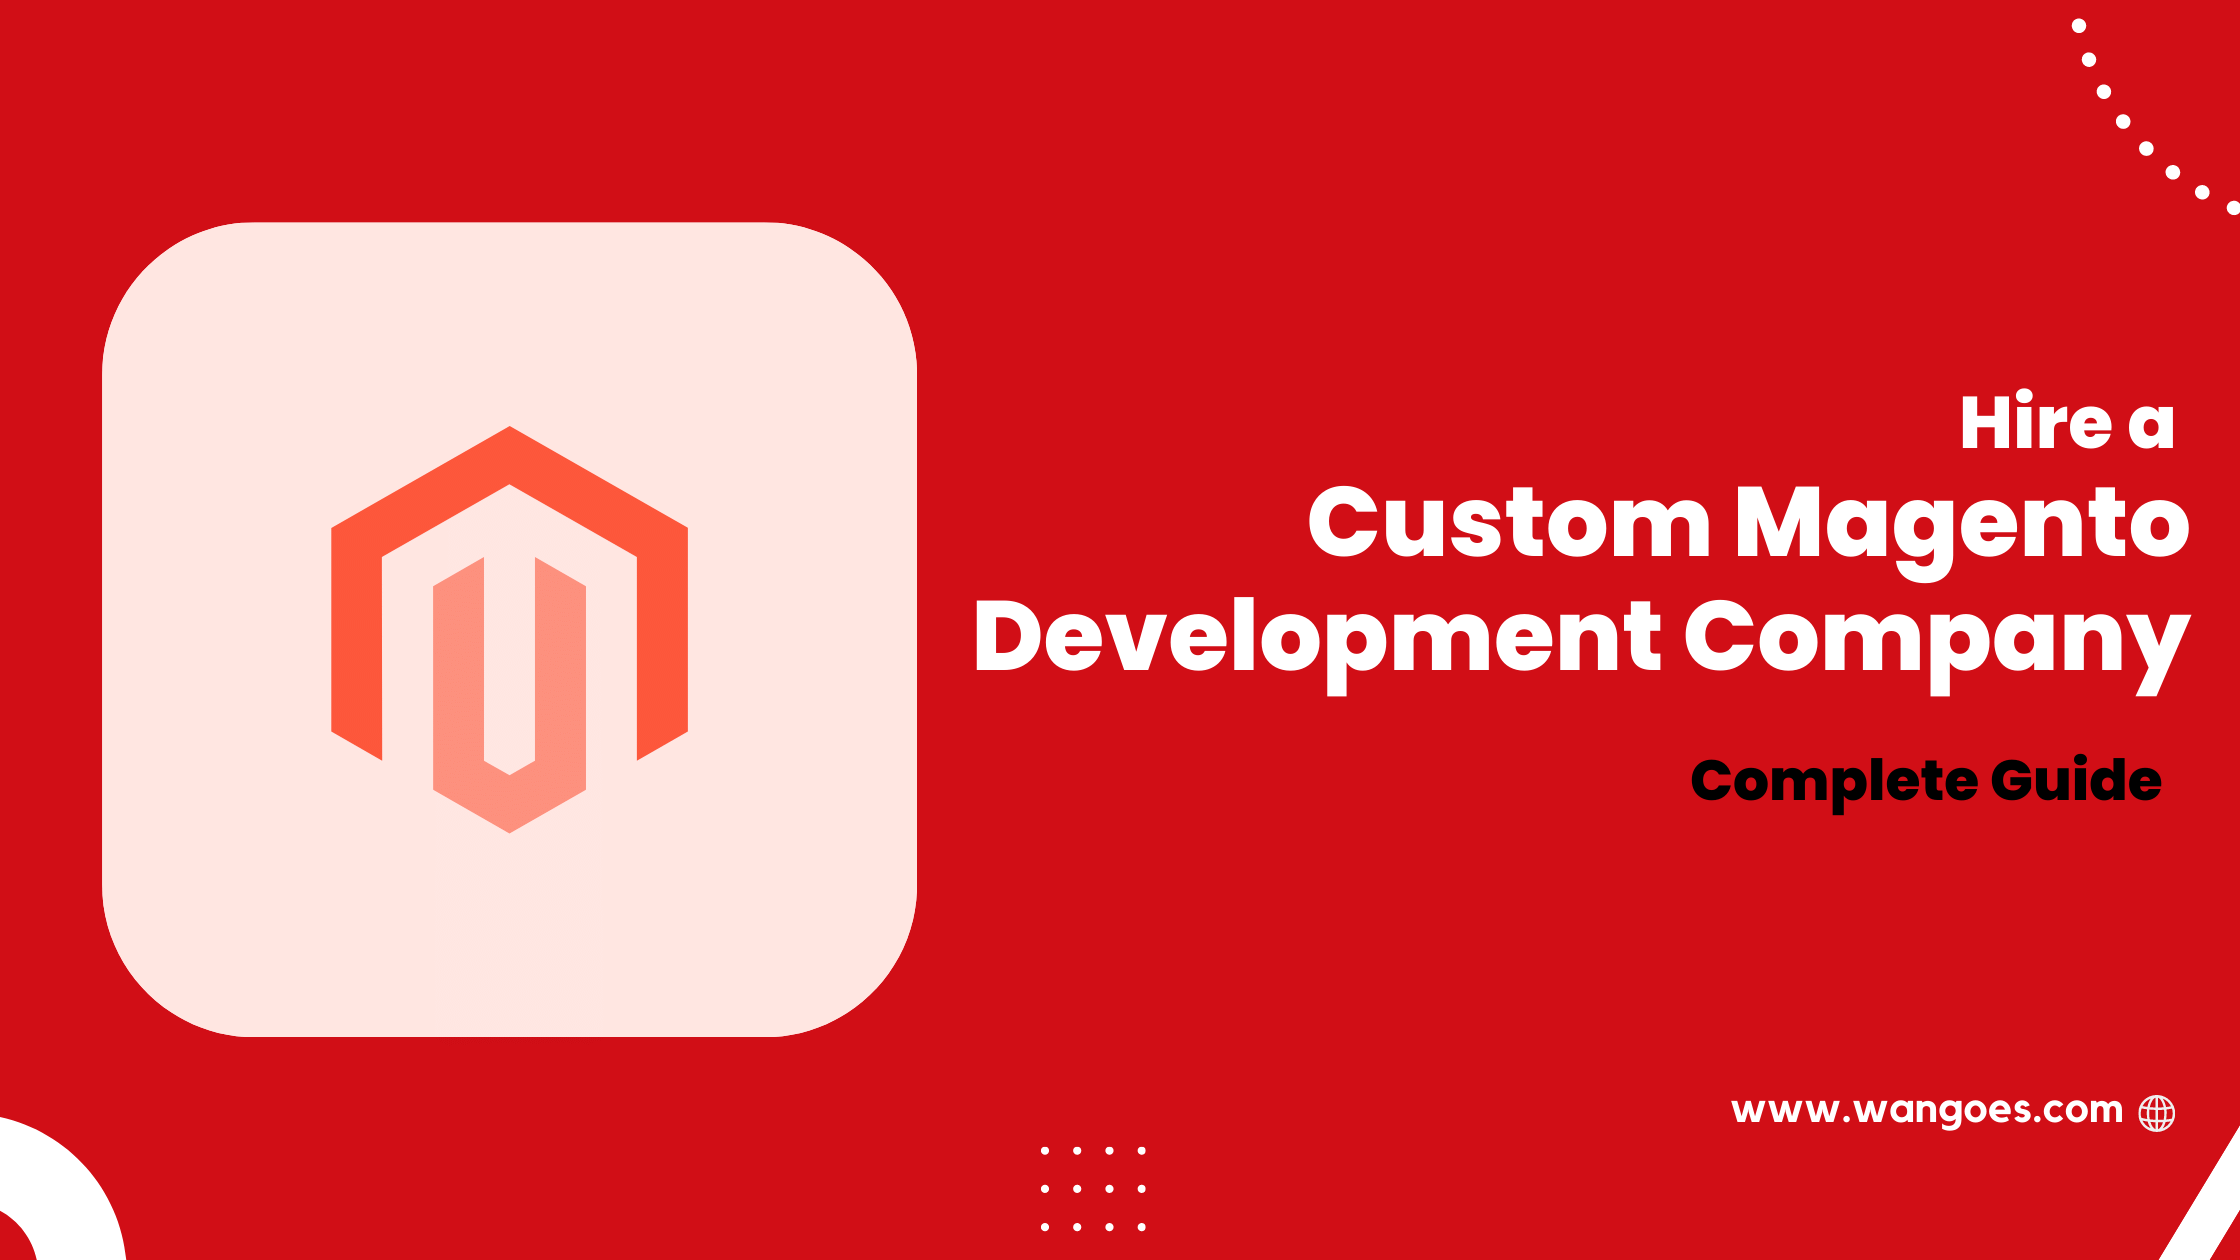 Hire a Custom Magento Development Company in 2022